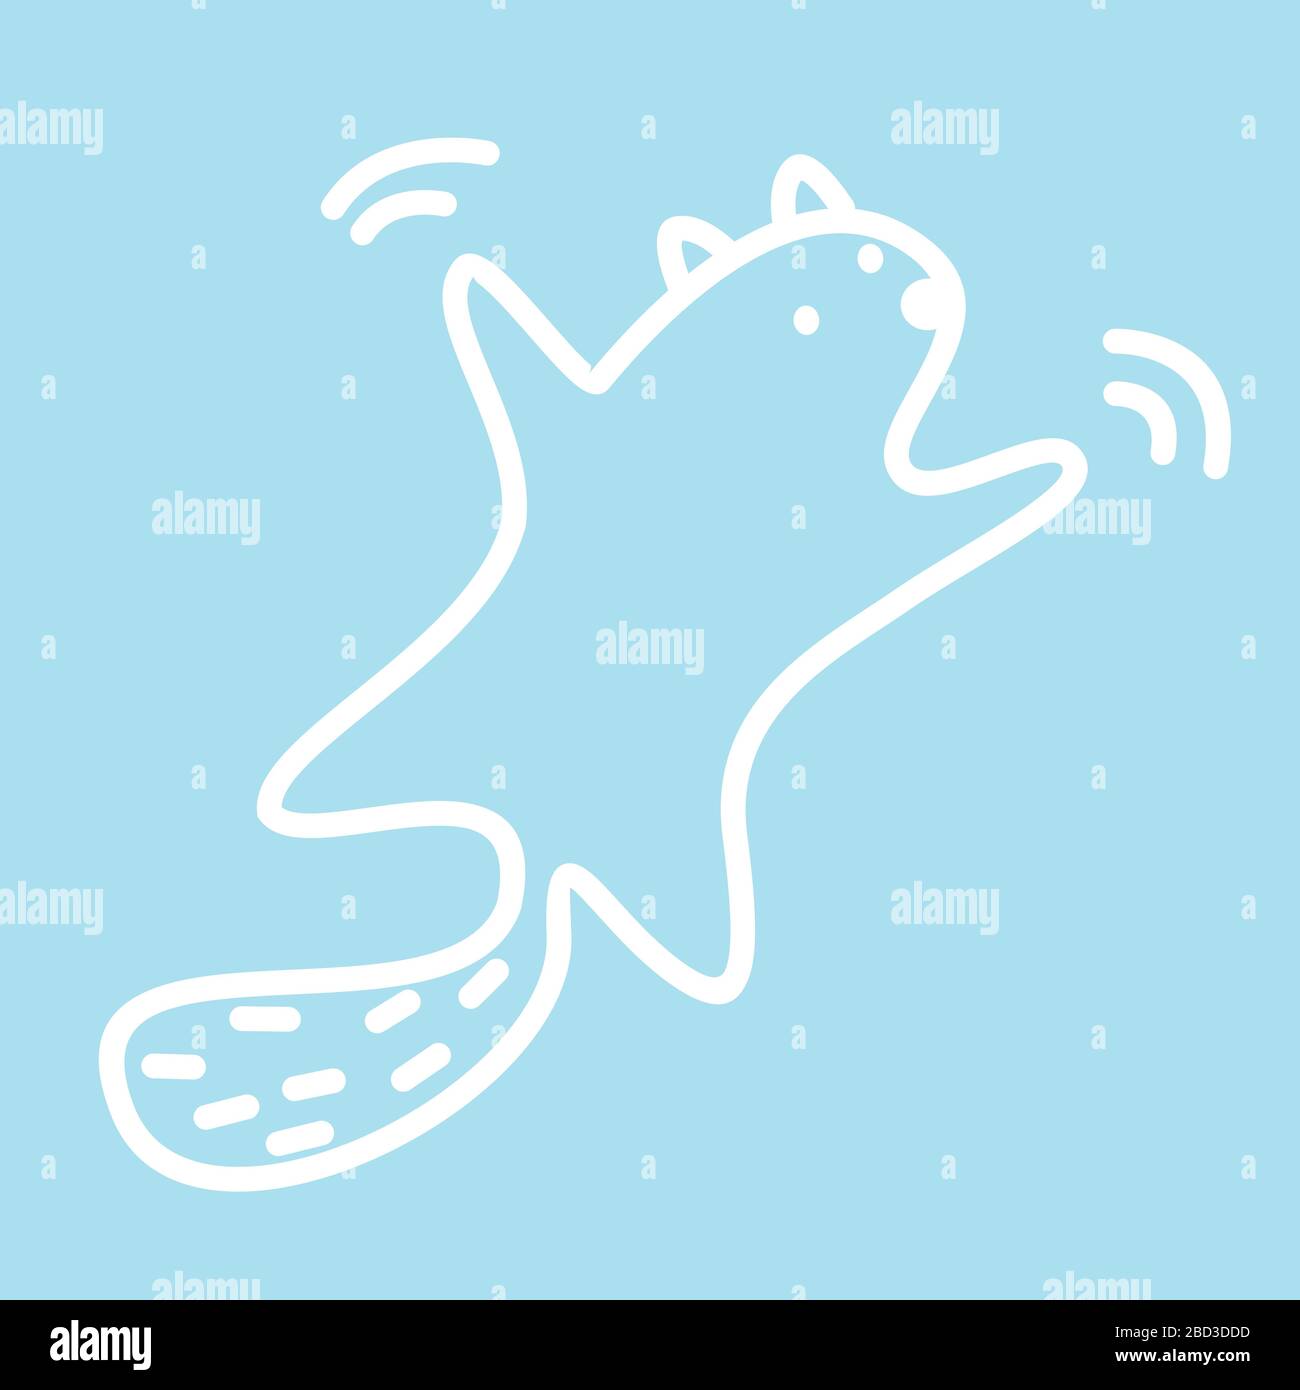 Carino kawaii personaggio animale sta galleggiando in aria. Modello divertente di disegno del logo del gatto o del castoro. Simbolo per il Web e la stampa. Illustrazione lineare degli animali nella Illustrazione Vettoriale